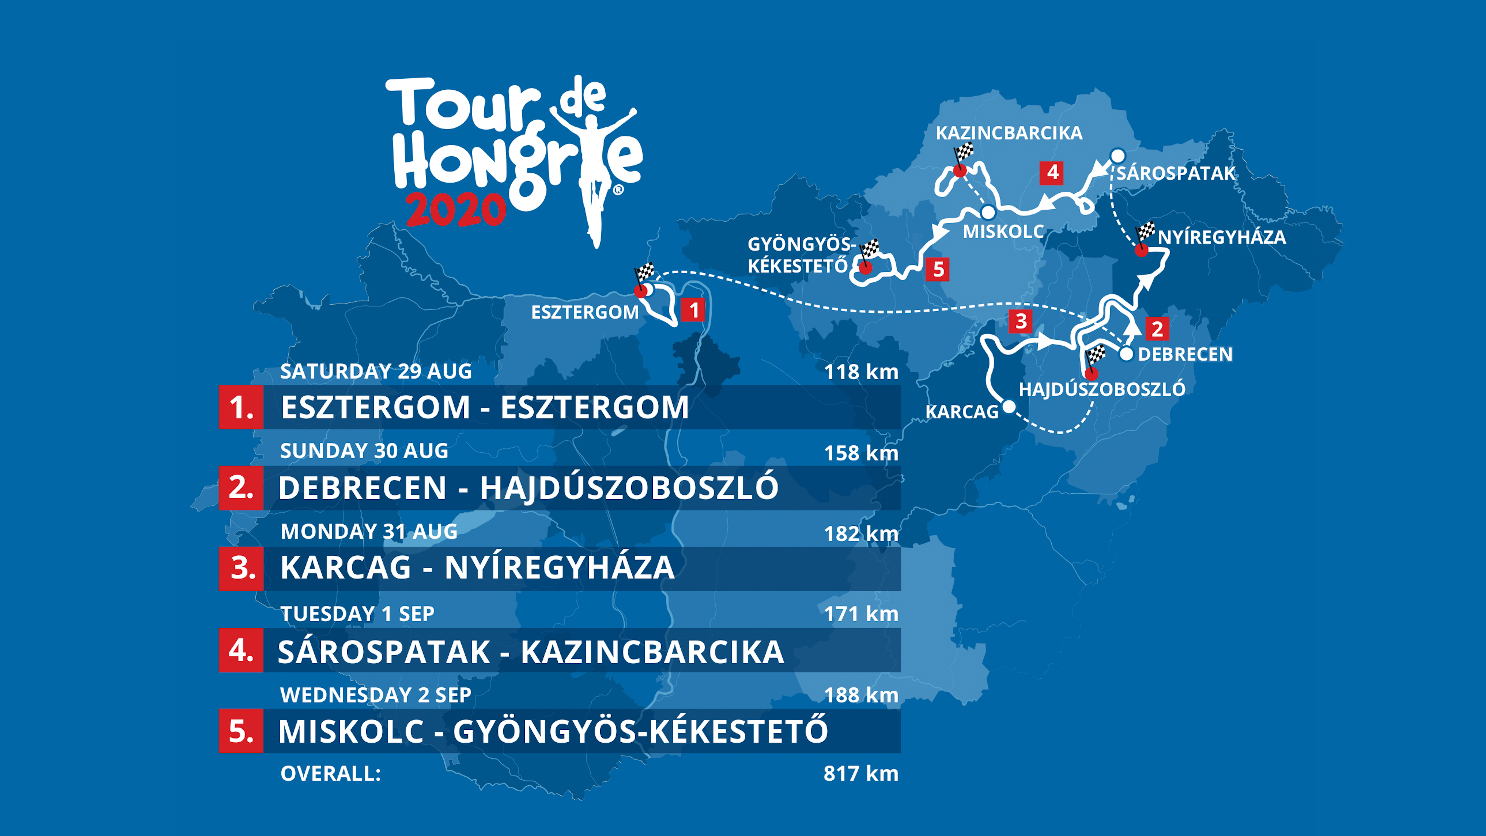 Die Offizielle Route Der Tour De Hongrie 2020 Das Rennen Startet In Esztergom Wunderbaresungarn De